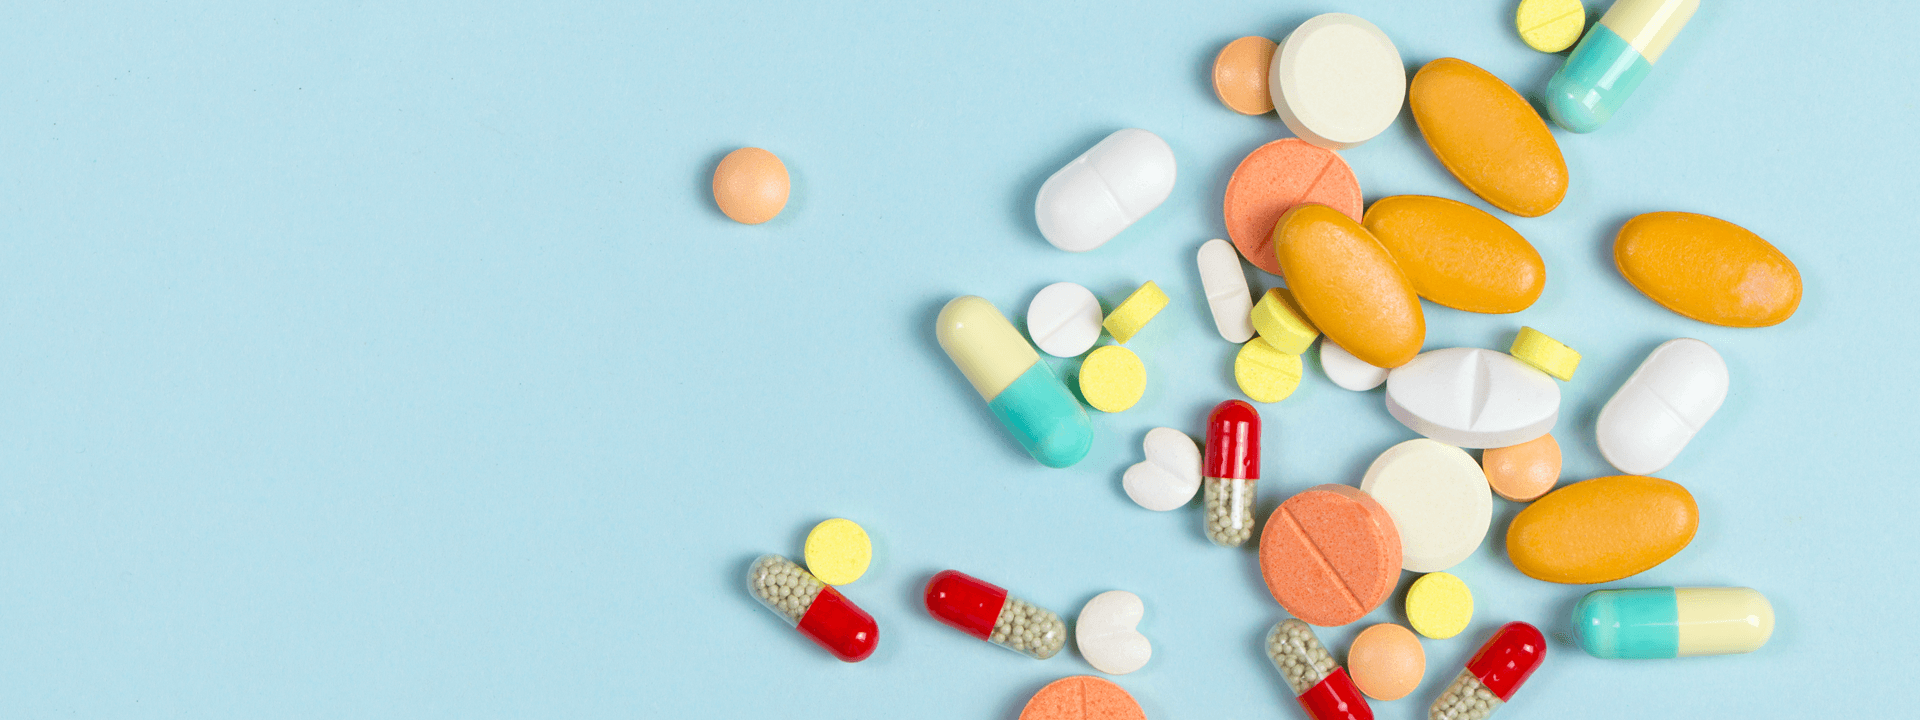 Are Prescription Drugs Pure?